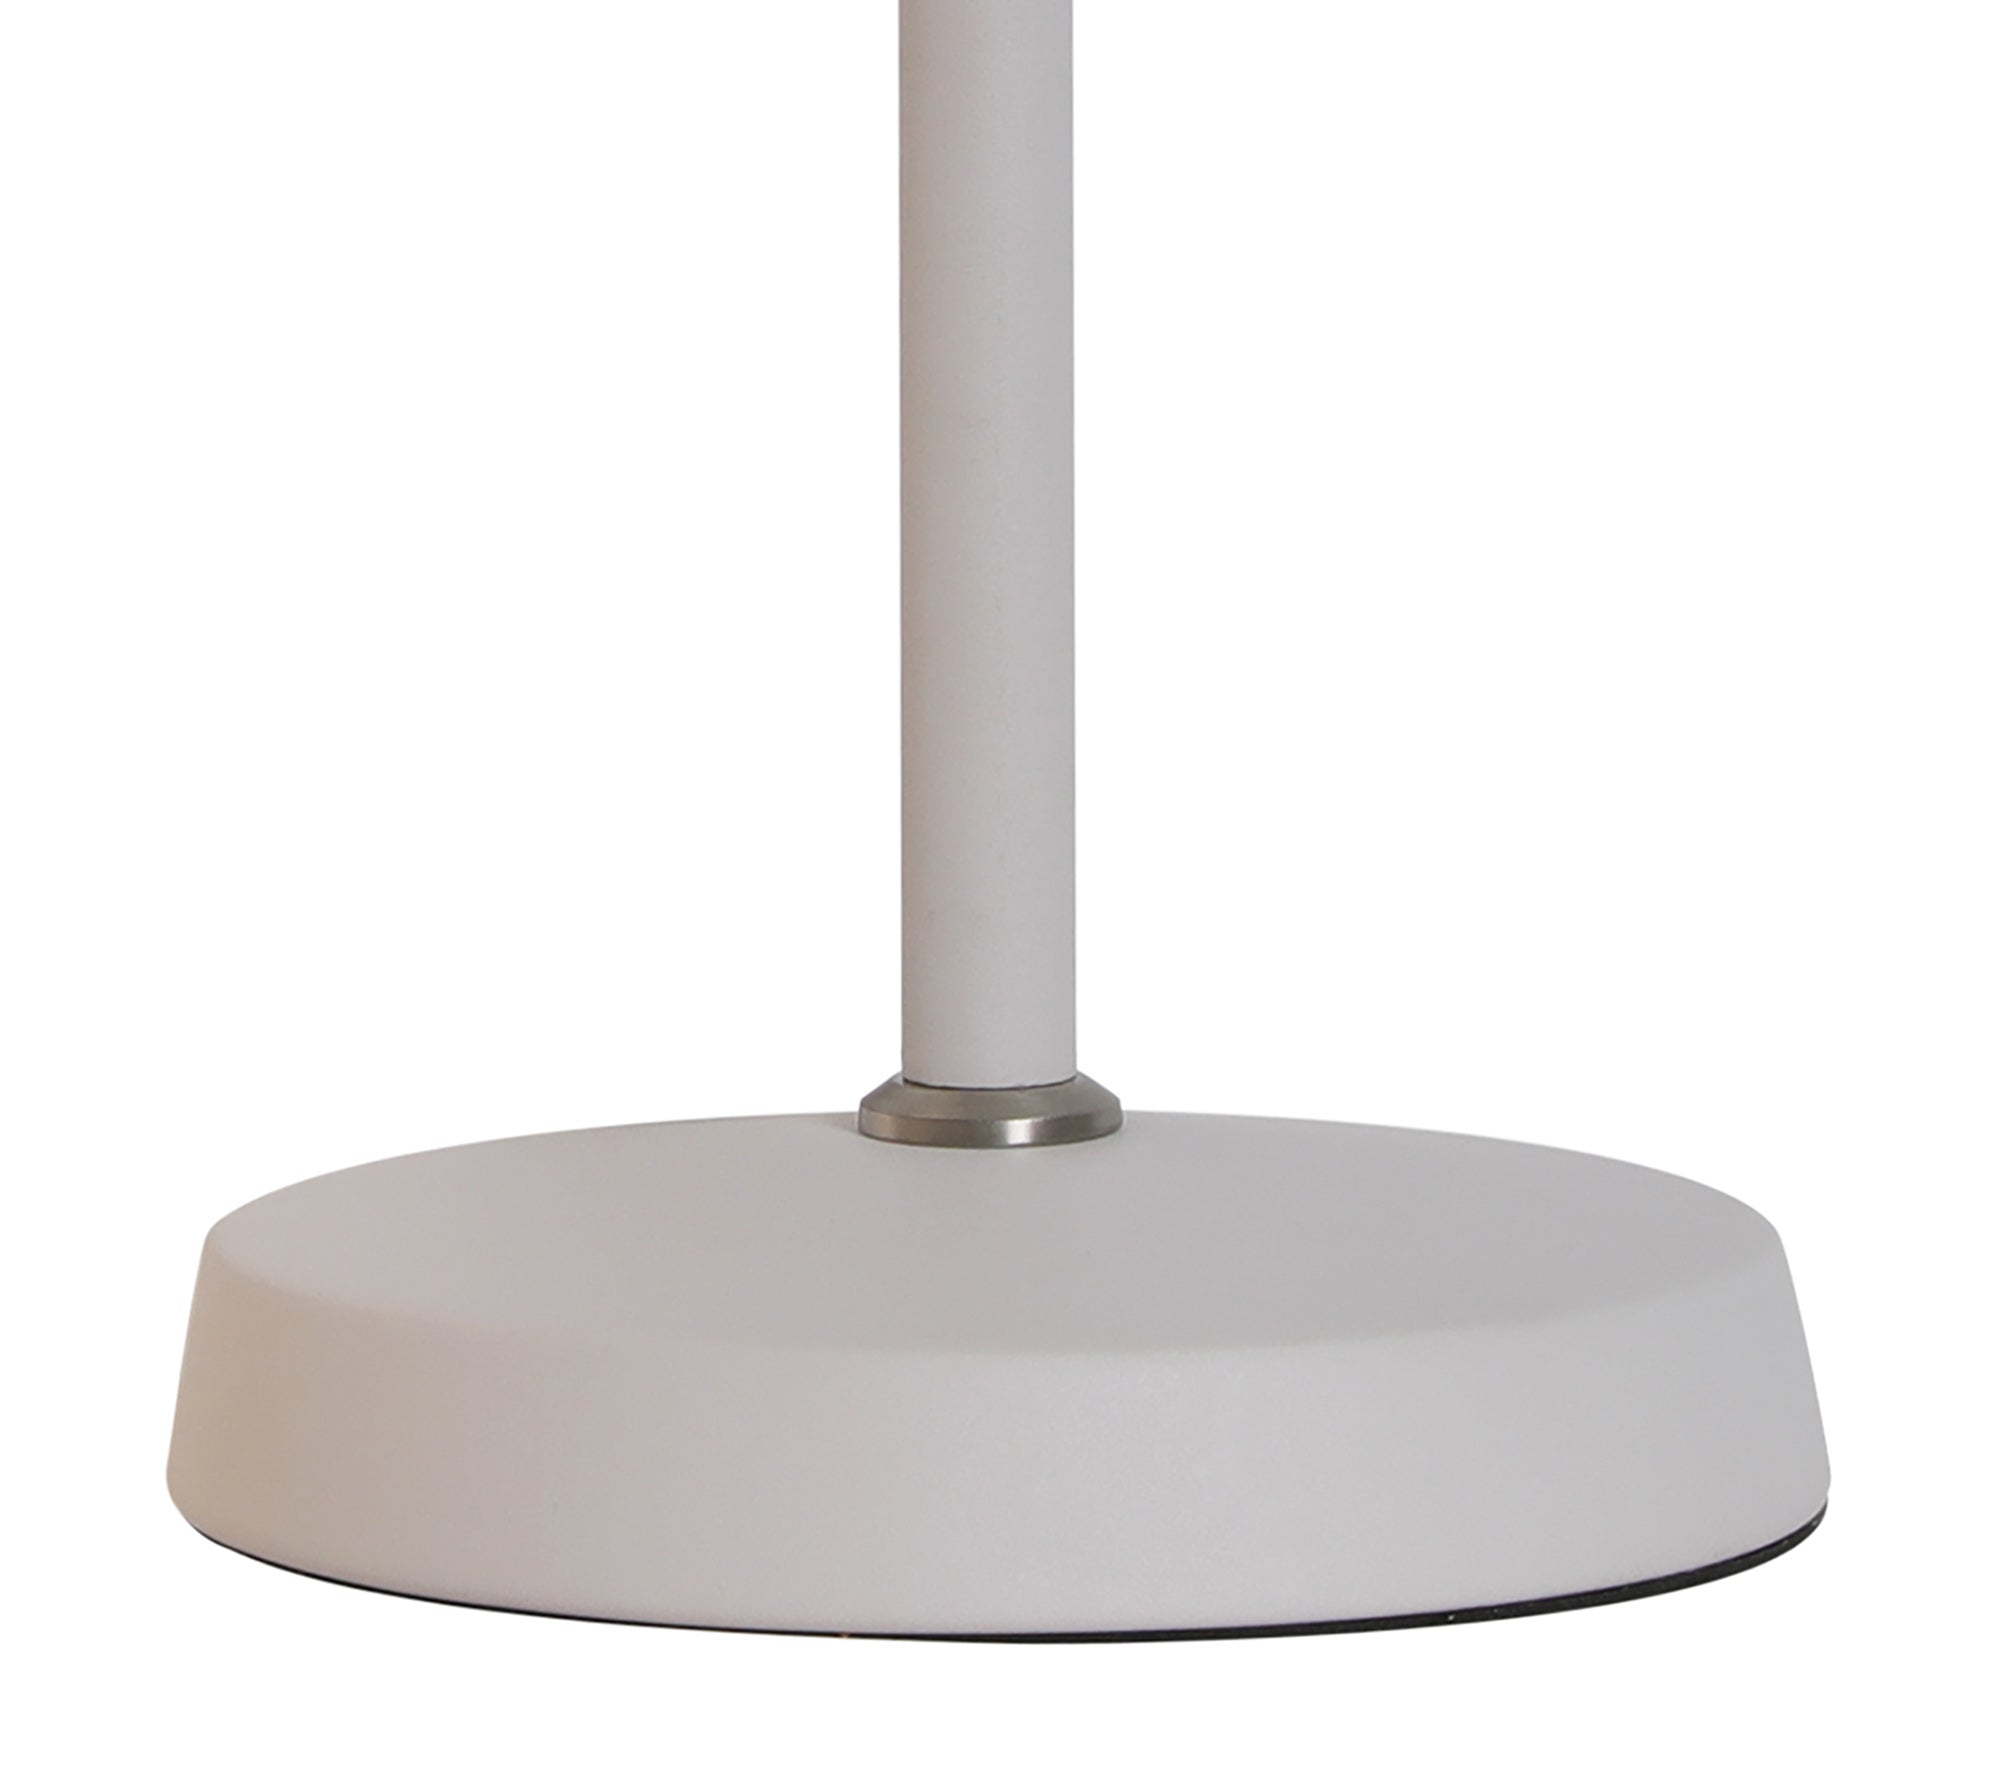 Banker Adjustable Table Lamp, 1 x E27, Sand White/Satin Nickel/White